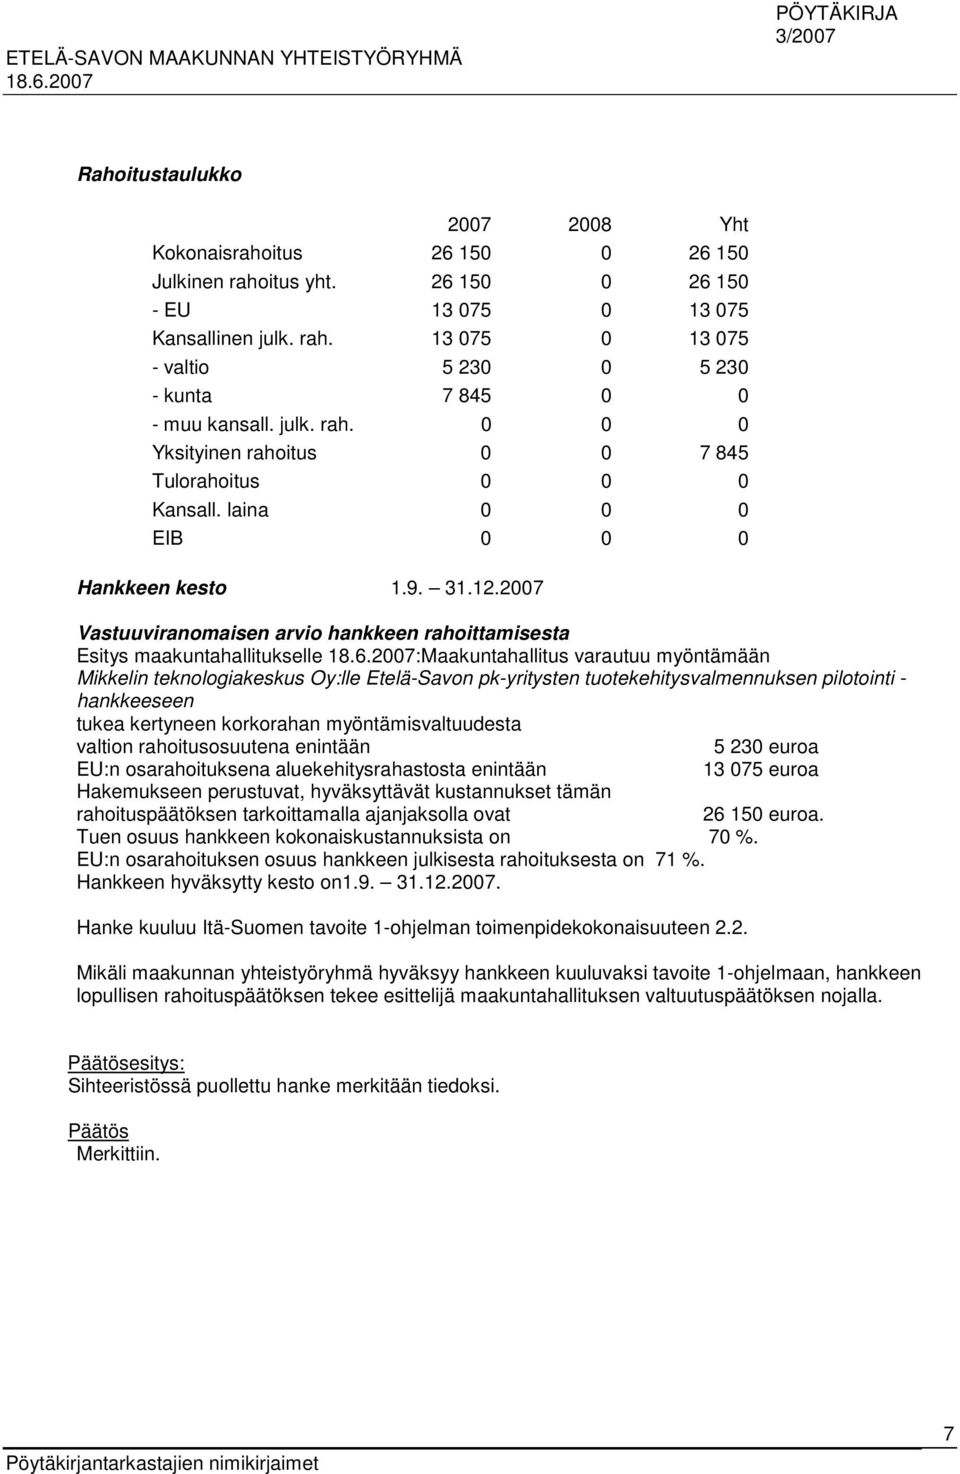 2007 Vastuuviranomaisen arvio hankkeen rahoittamisesta Esitys maakuntahallitukselle :Maakuntahallitus varautuu myöntämään Mikkelin teknologiakeskus Oy:lle Etelä-Savon pk-yritysten